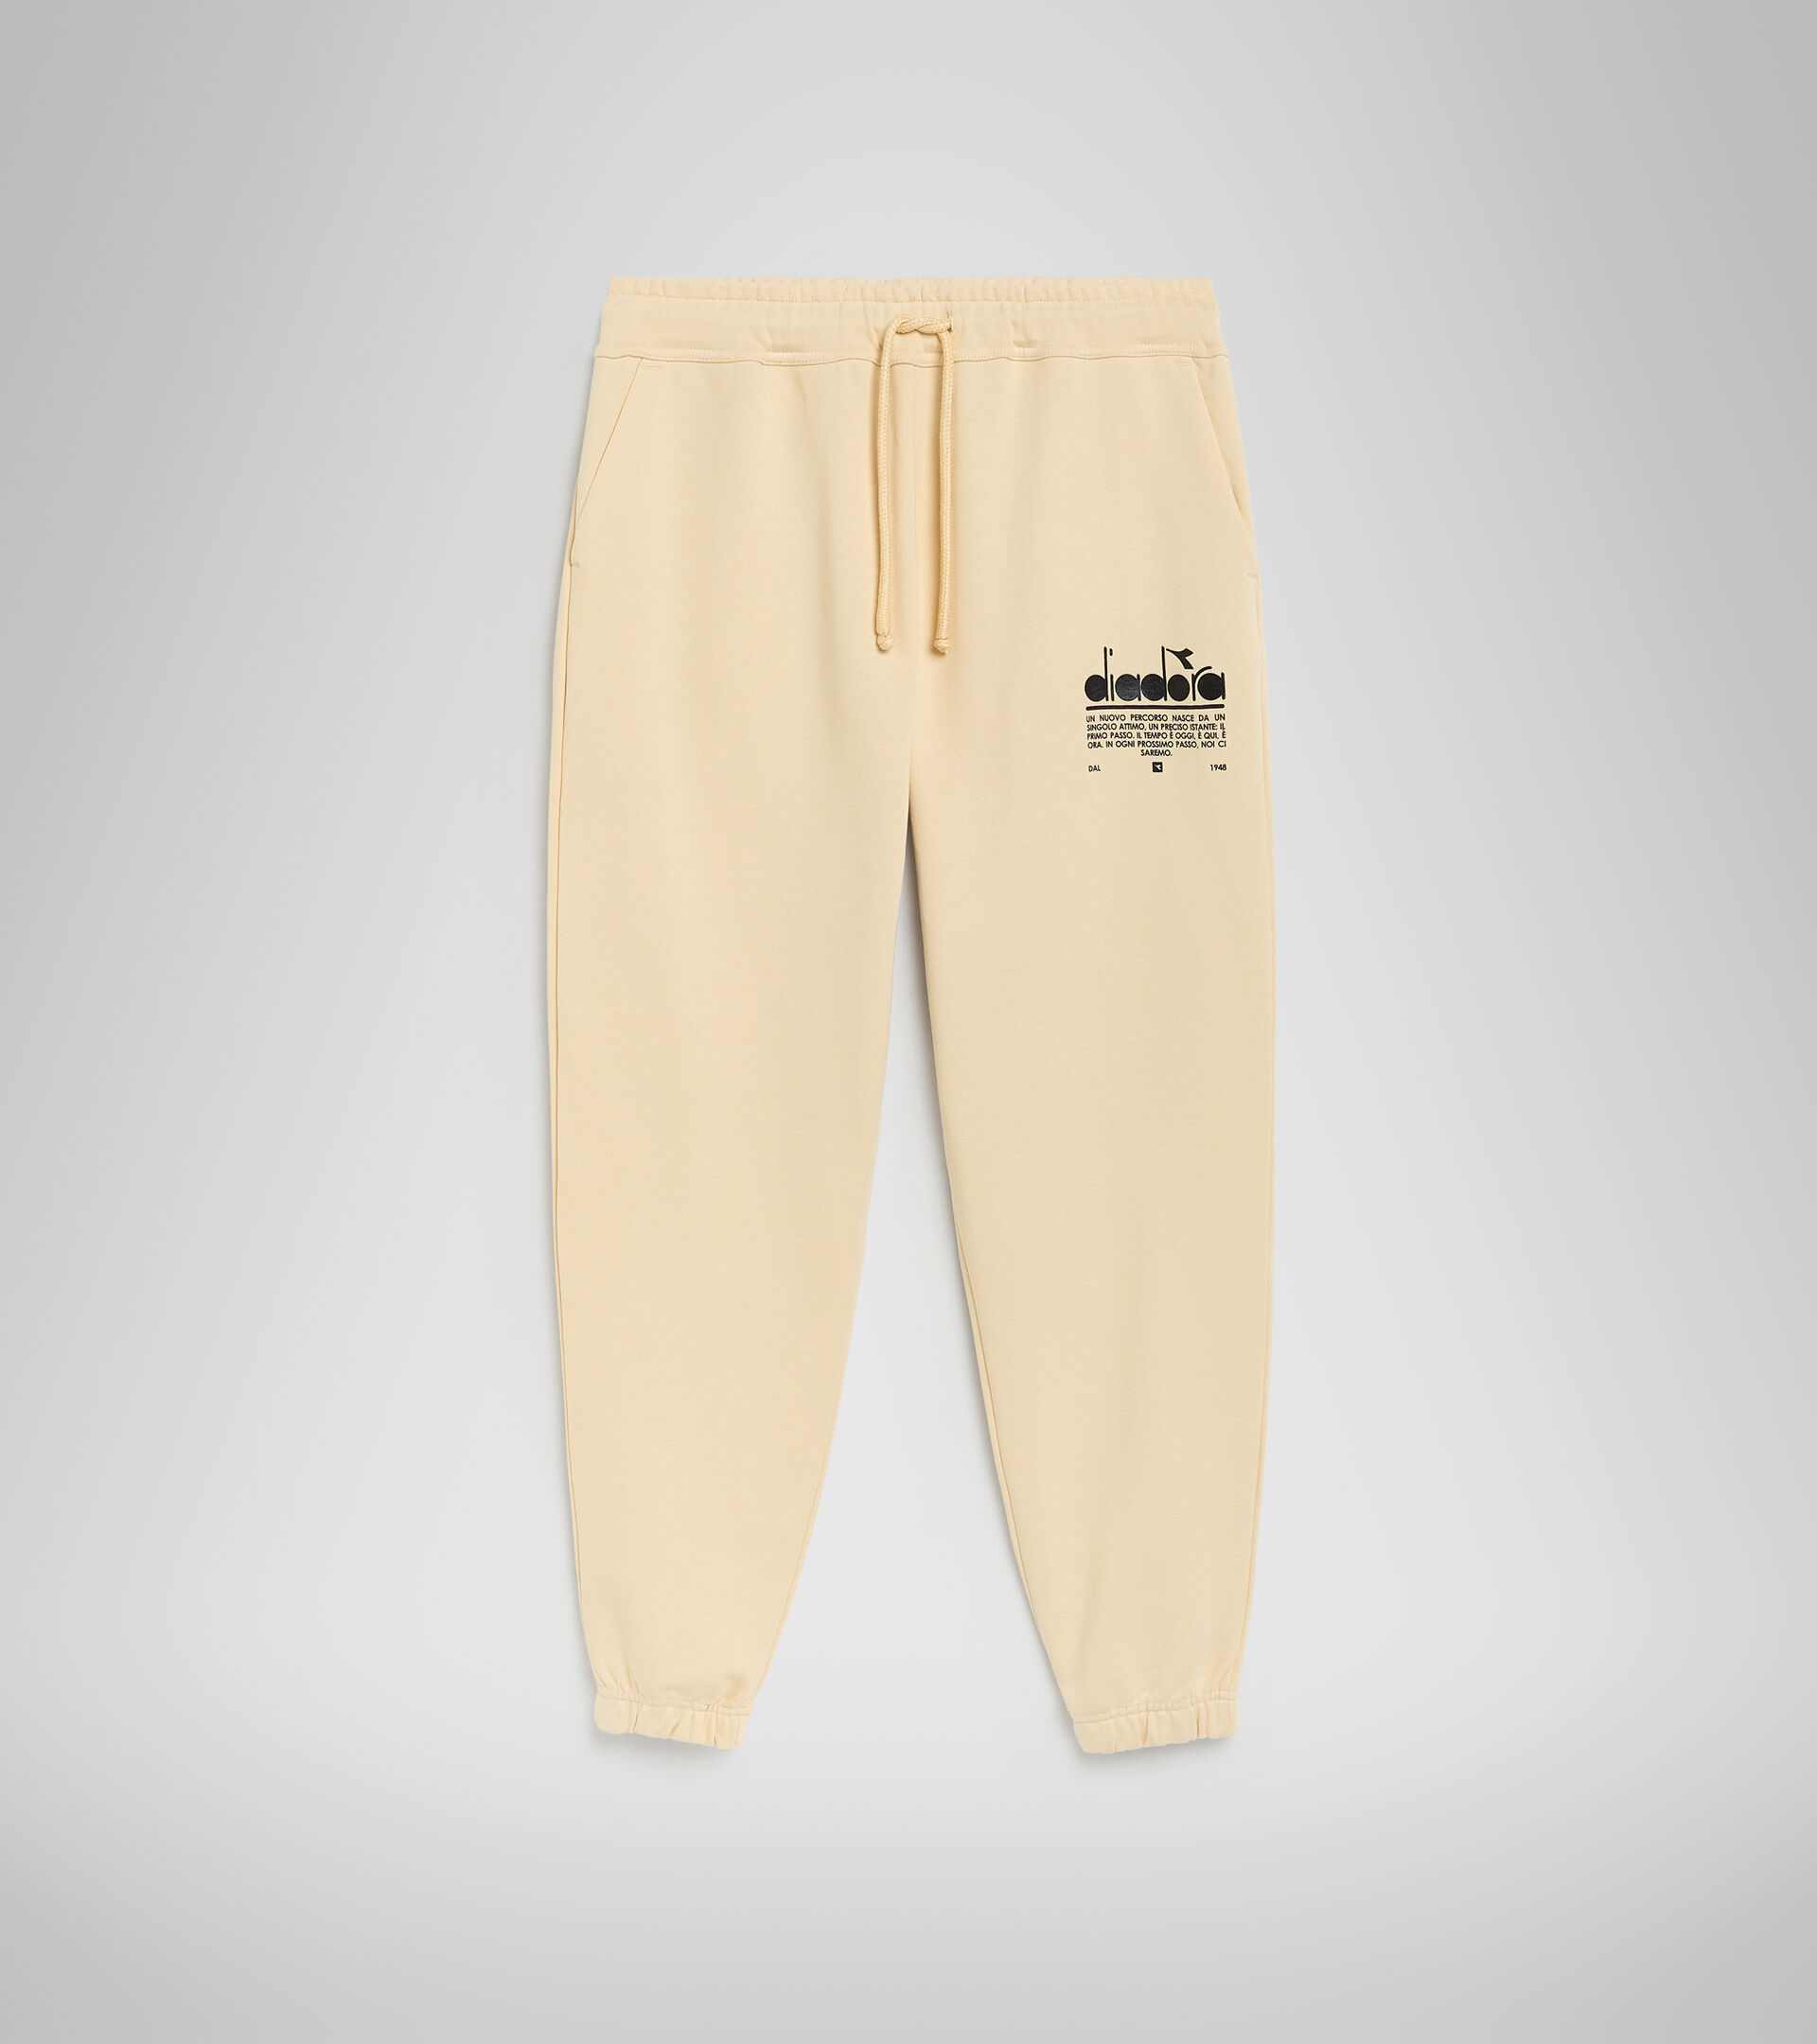 Cotton sports trousers - Unisex PANT MANIFESTO NAVAJO BEIGE - Diadora